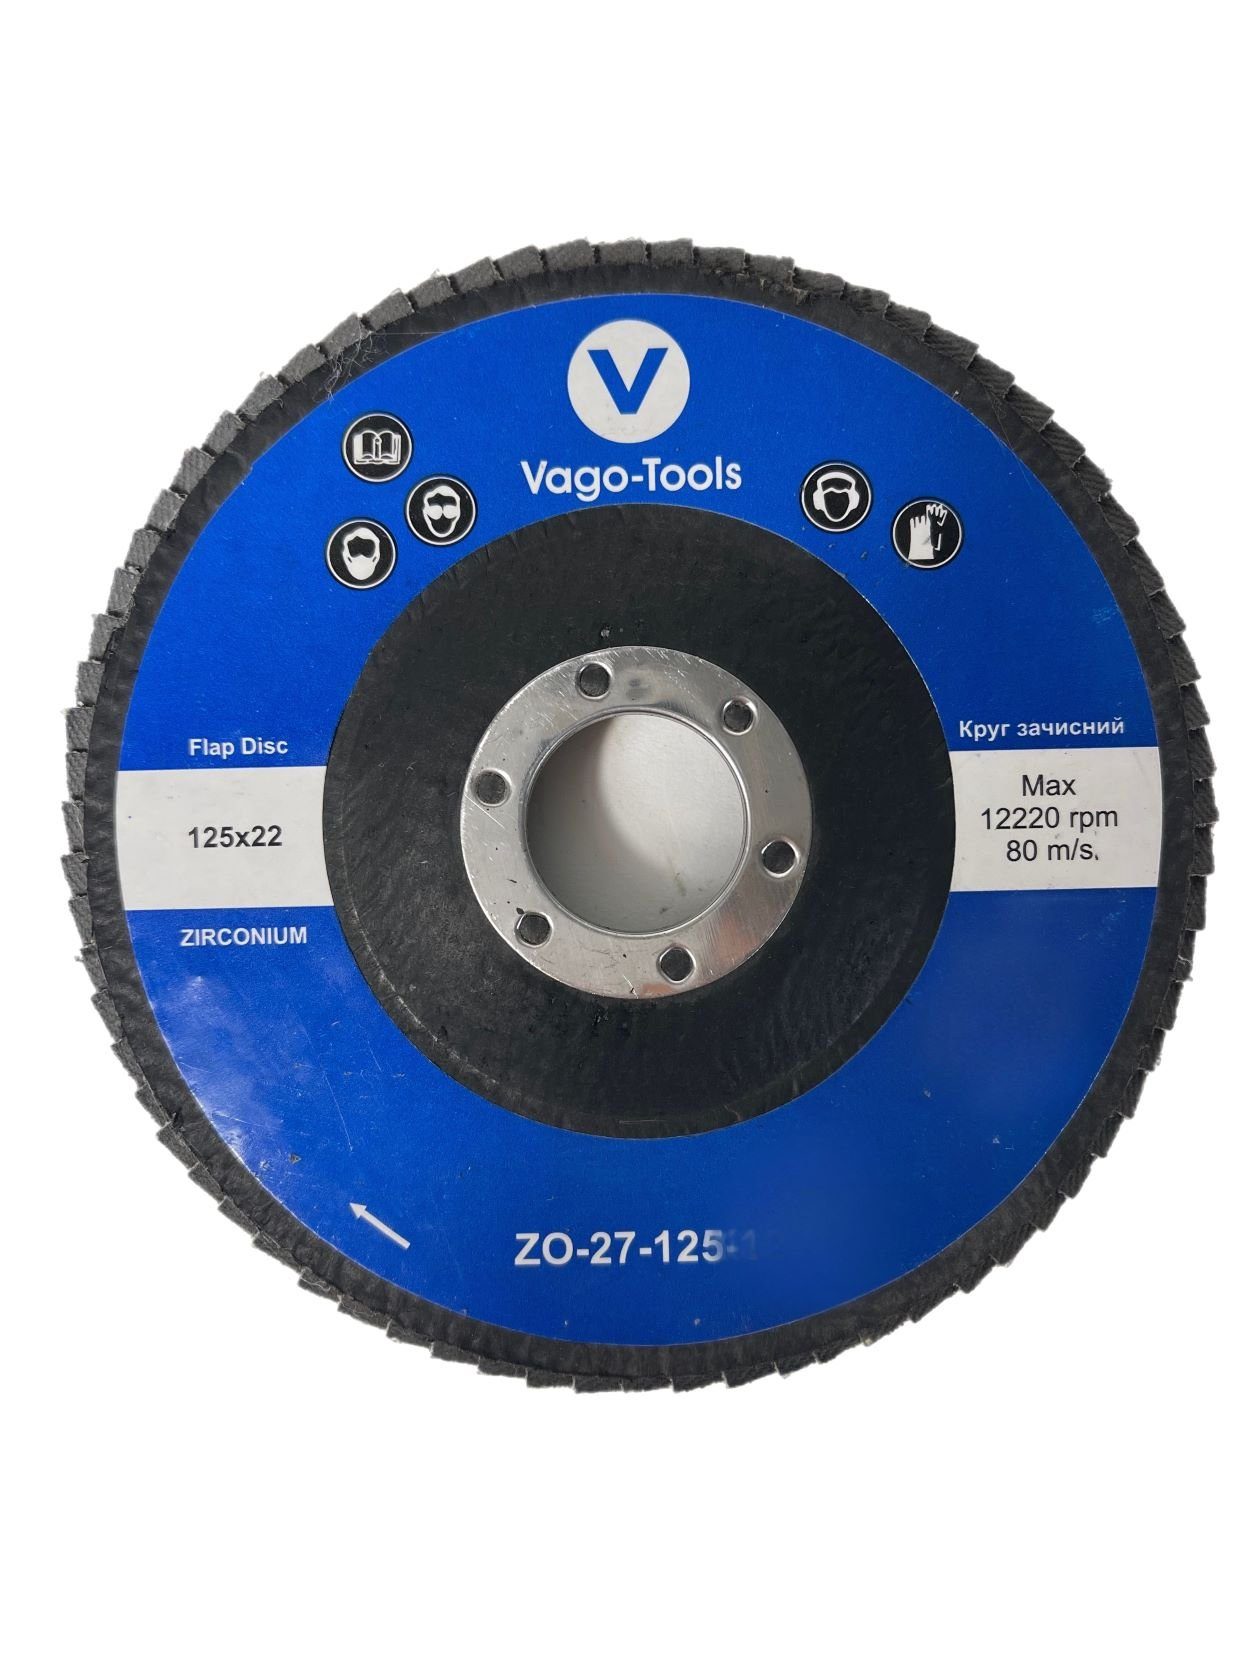 VaGo-Tools Schleifscheibe Fächerschleifscheiben 125mm P80 flach Blau 5x, (Packung)